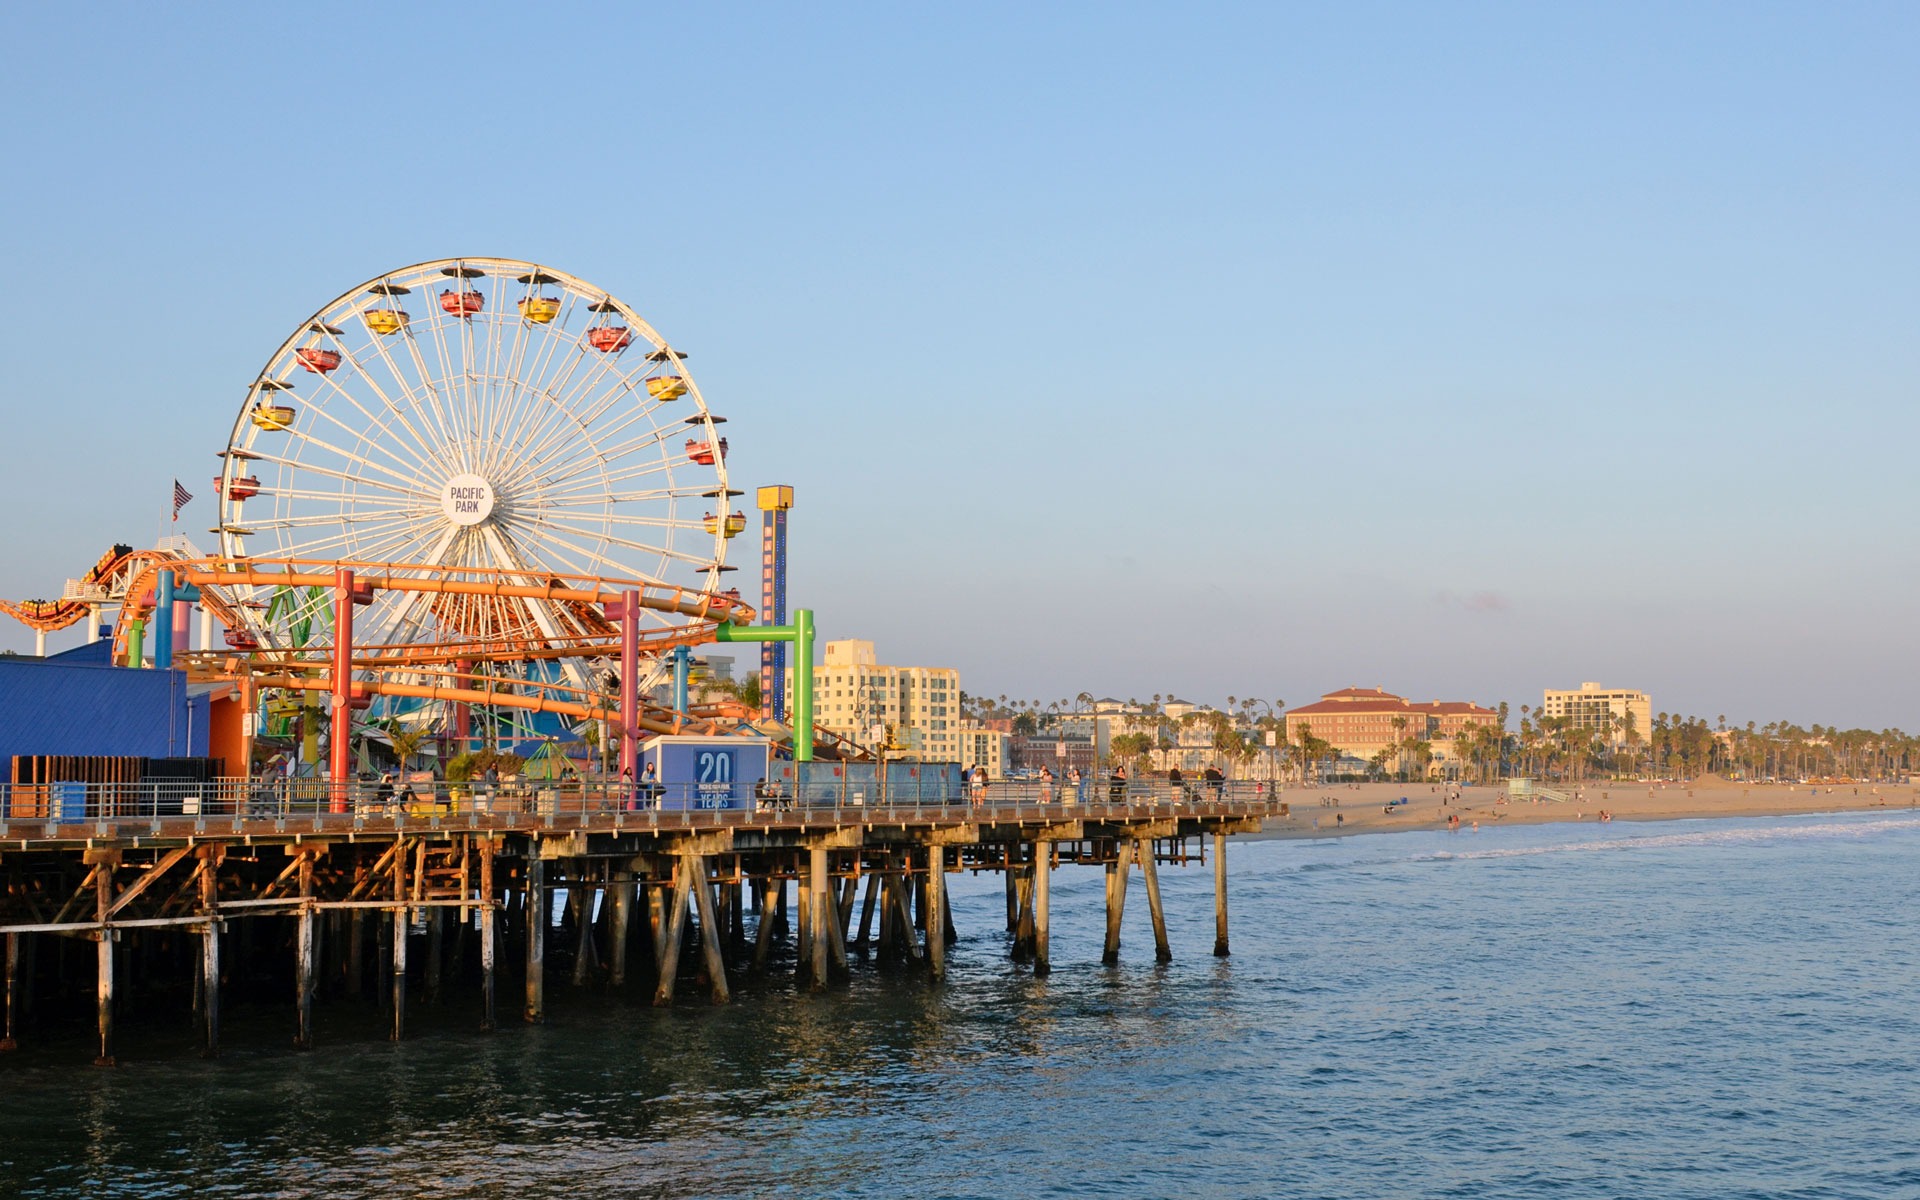 Fahrgeschäfte, darunter ein Riesenrad, auf dem berühmten Santa Monica Pier in der Nähe von Los Angeles, Kalifornien. Im Hintergrund leuchtet der Strand im Sonnenuntergang.